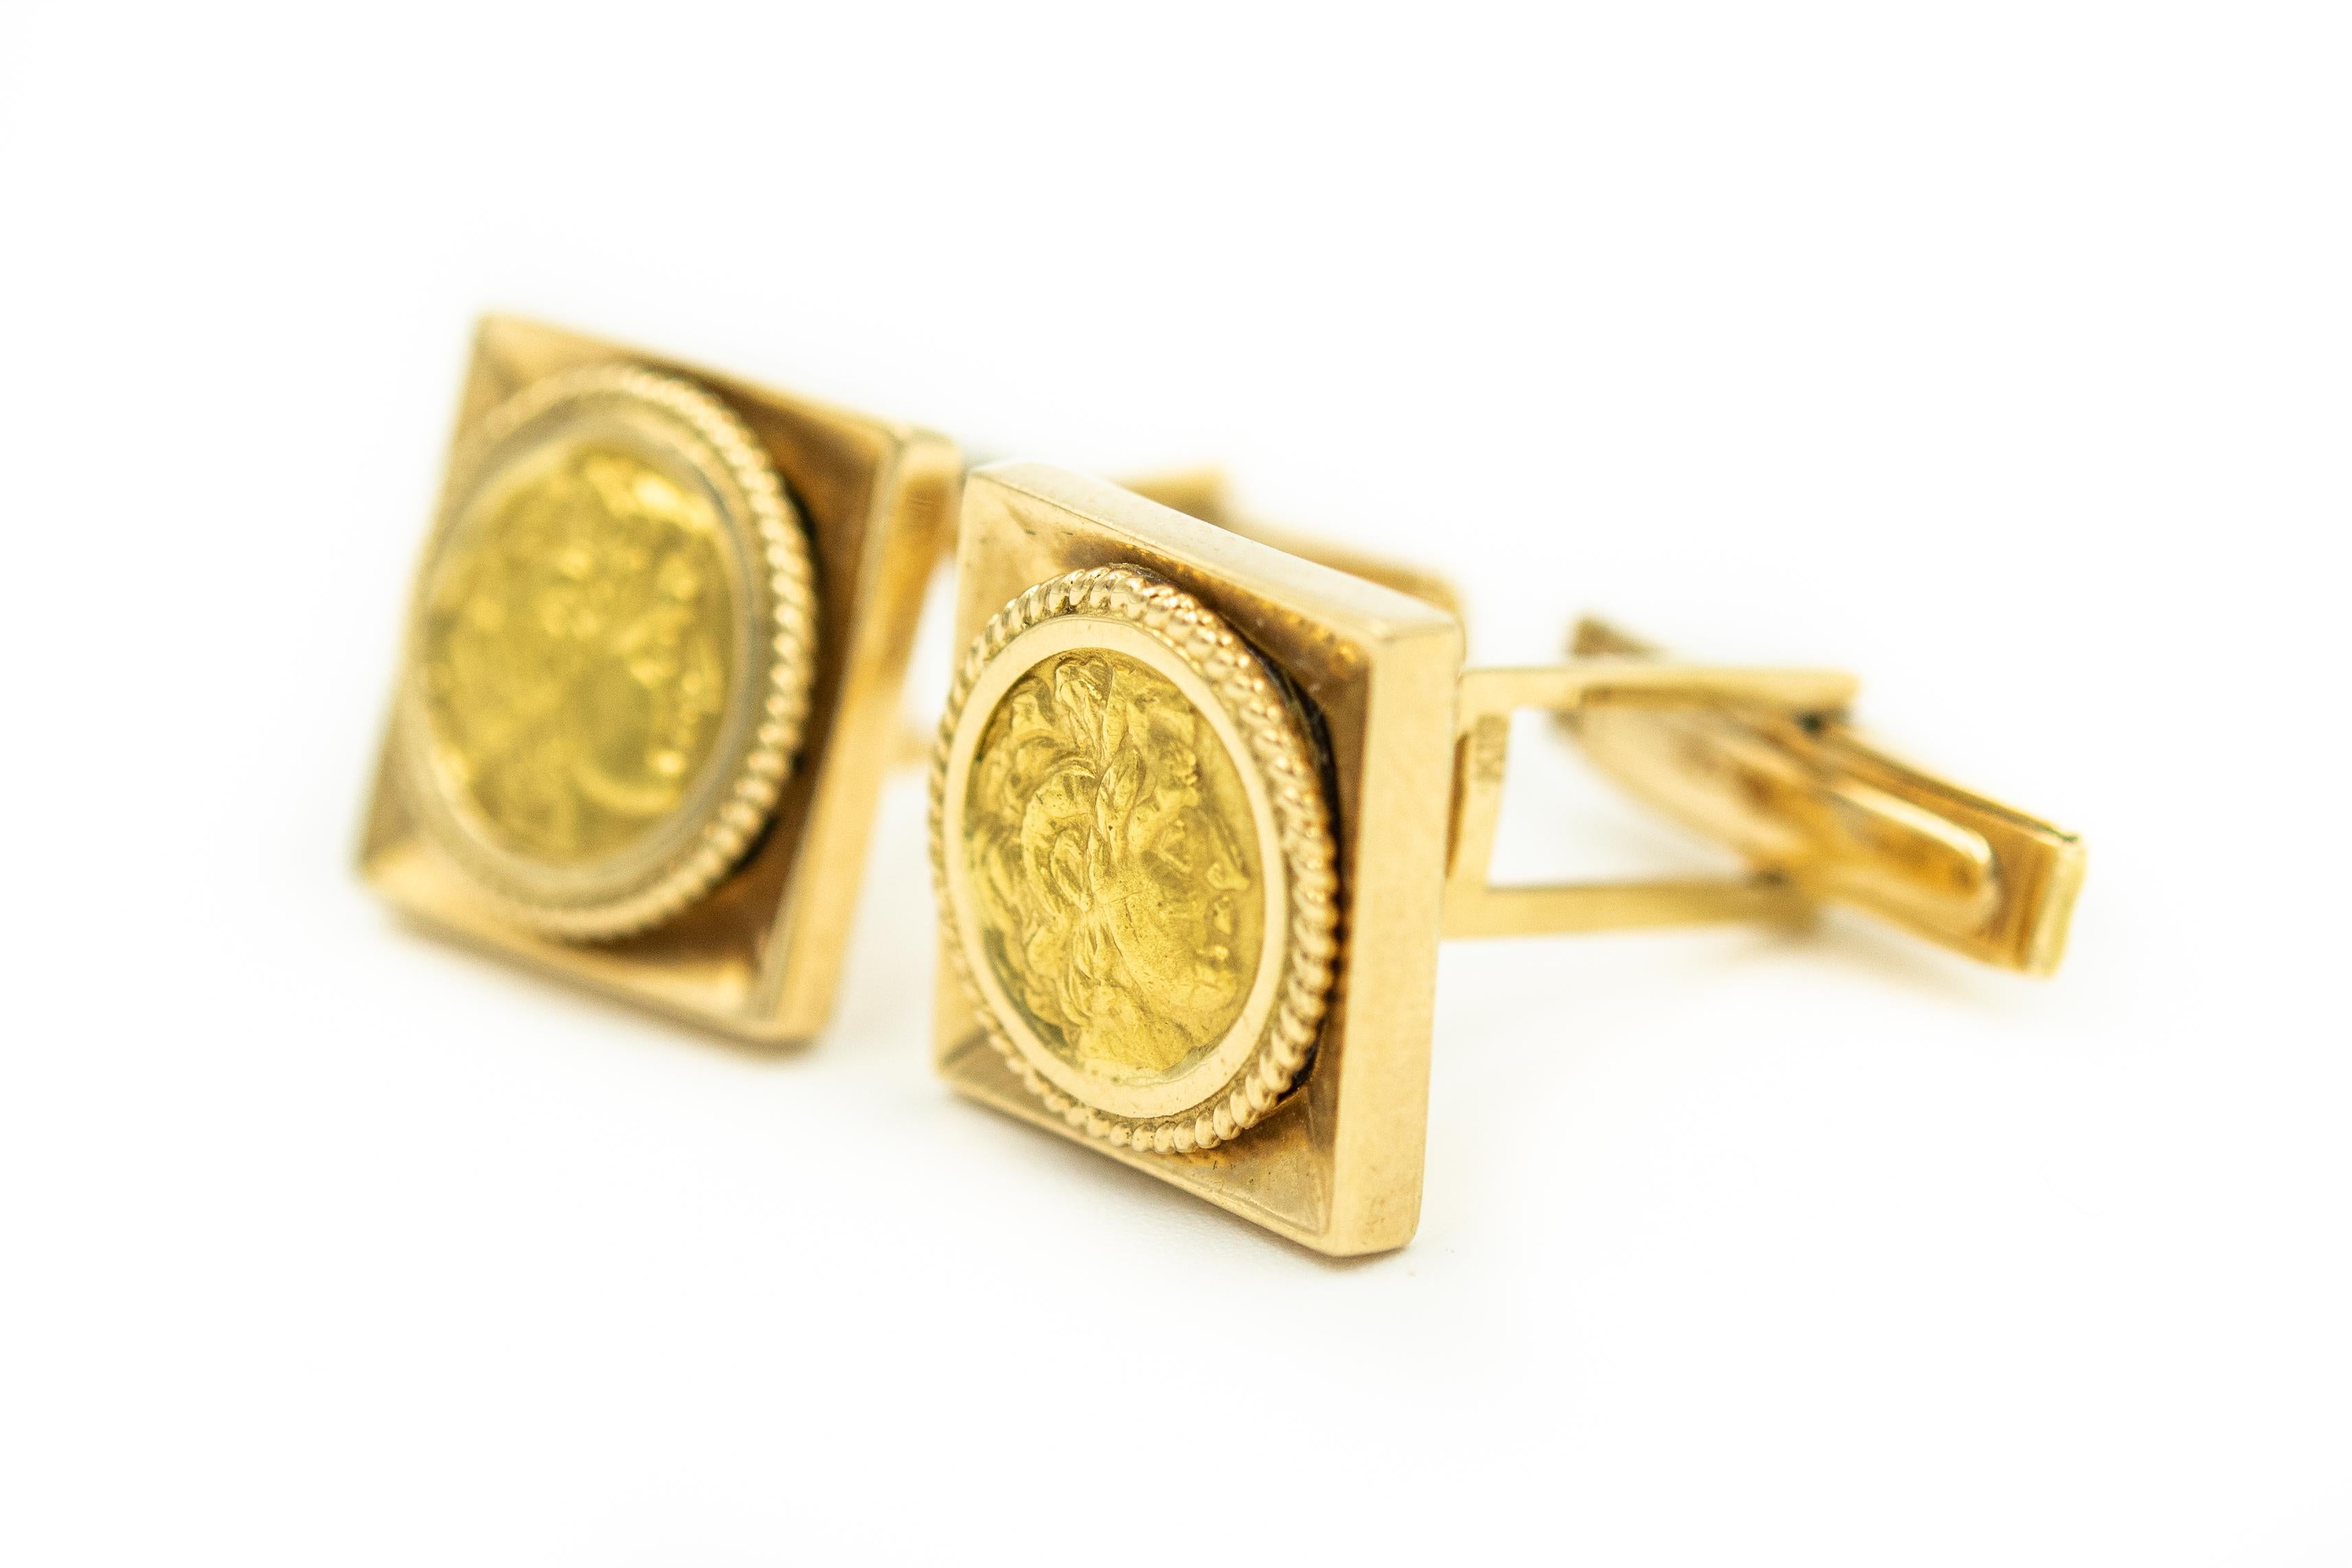 Élégants boutons de manchette carrés en or jaune 18k représentant le portrait en relief d'un homme grec ou romain antique.  Les dos sont des t-bars de dos de baleine, il est donc très facile de les mettre en place.

Marqué A.61 et K18

